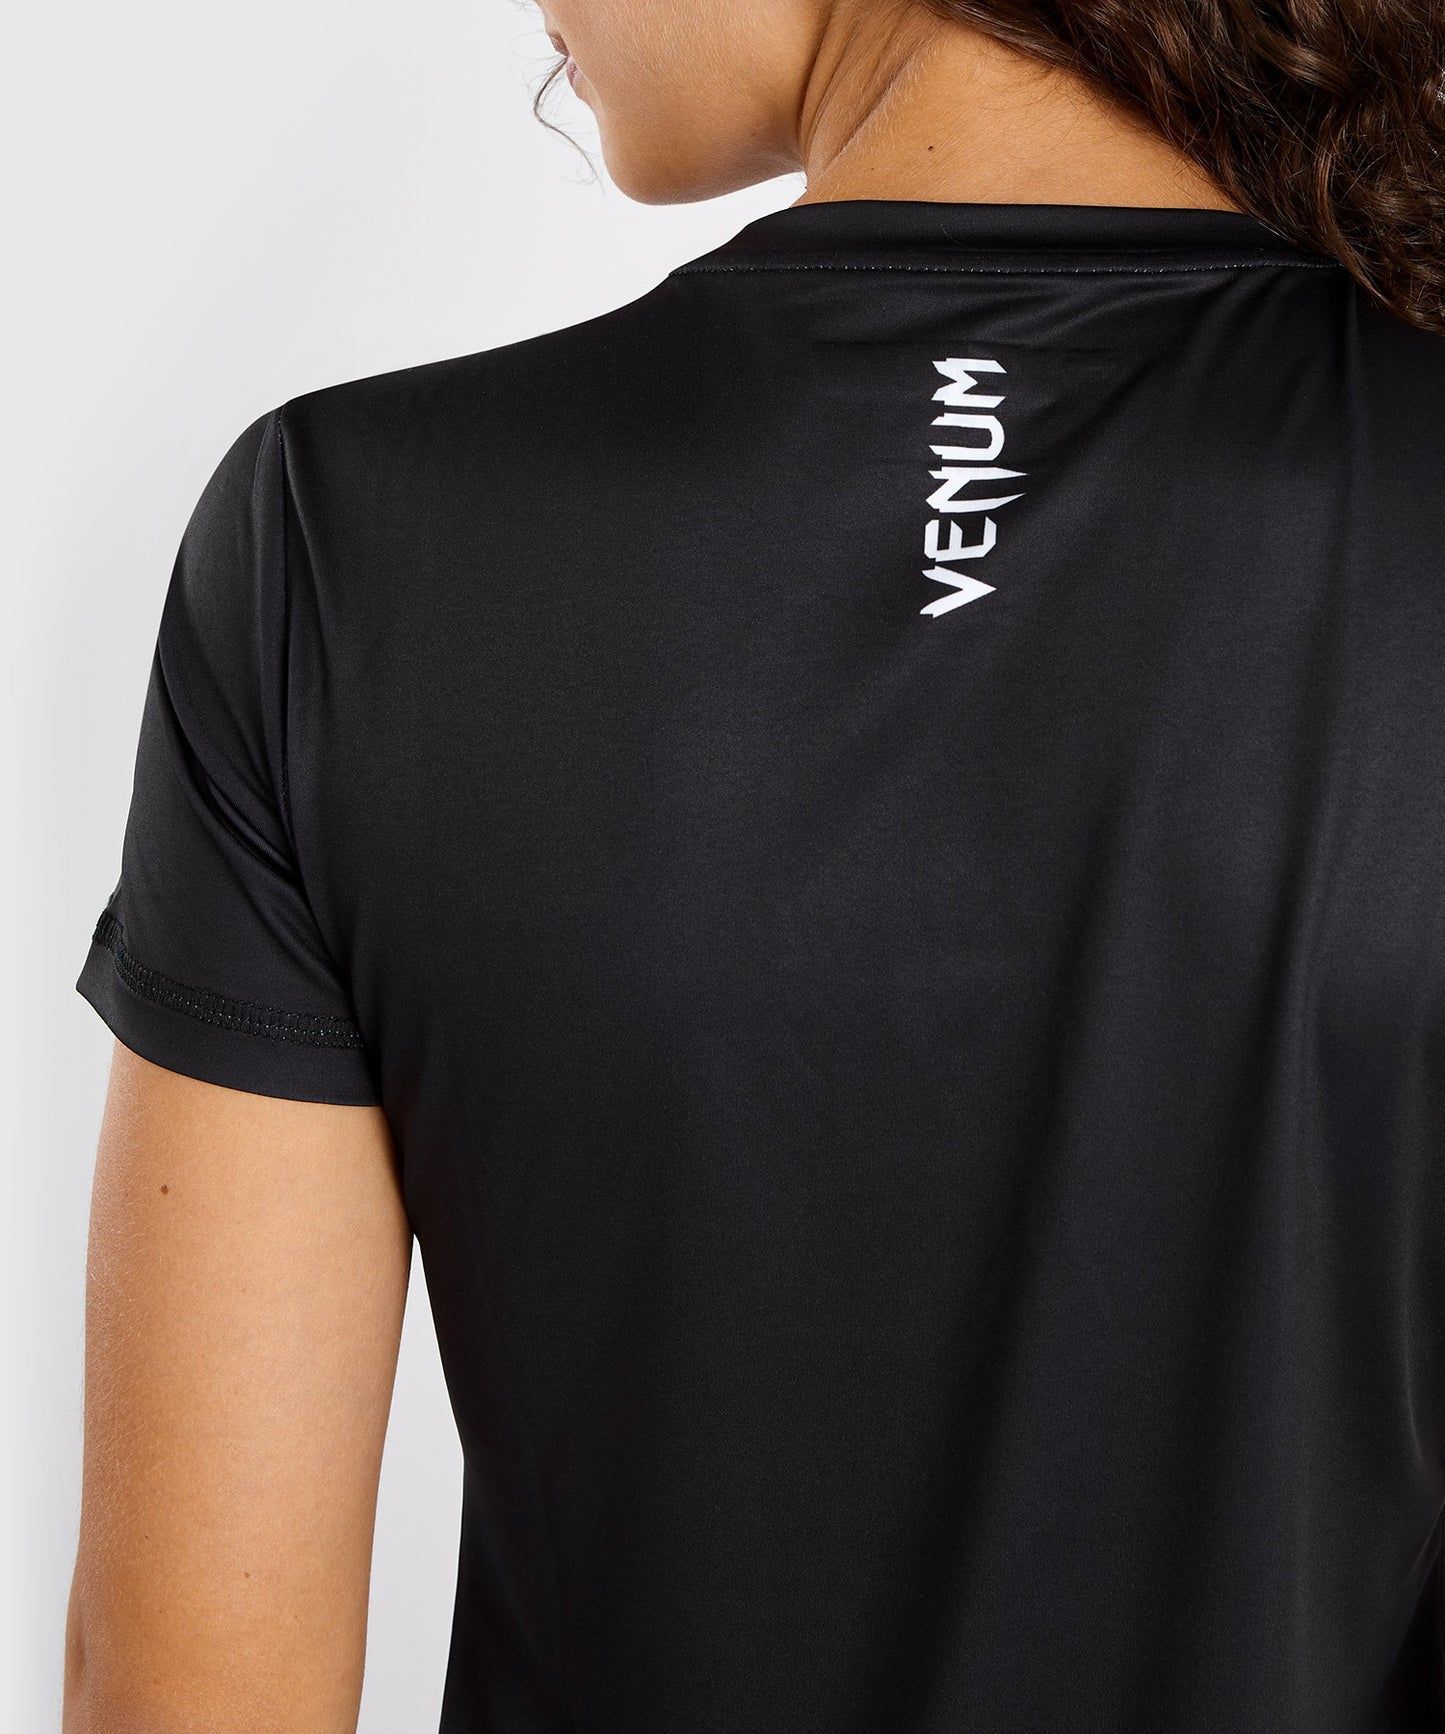 Venum x Ares Dry Tech T-shirt Voor Dames - Zwart